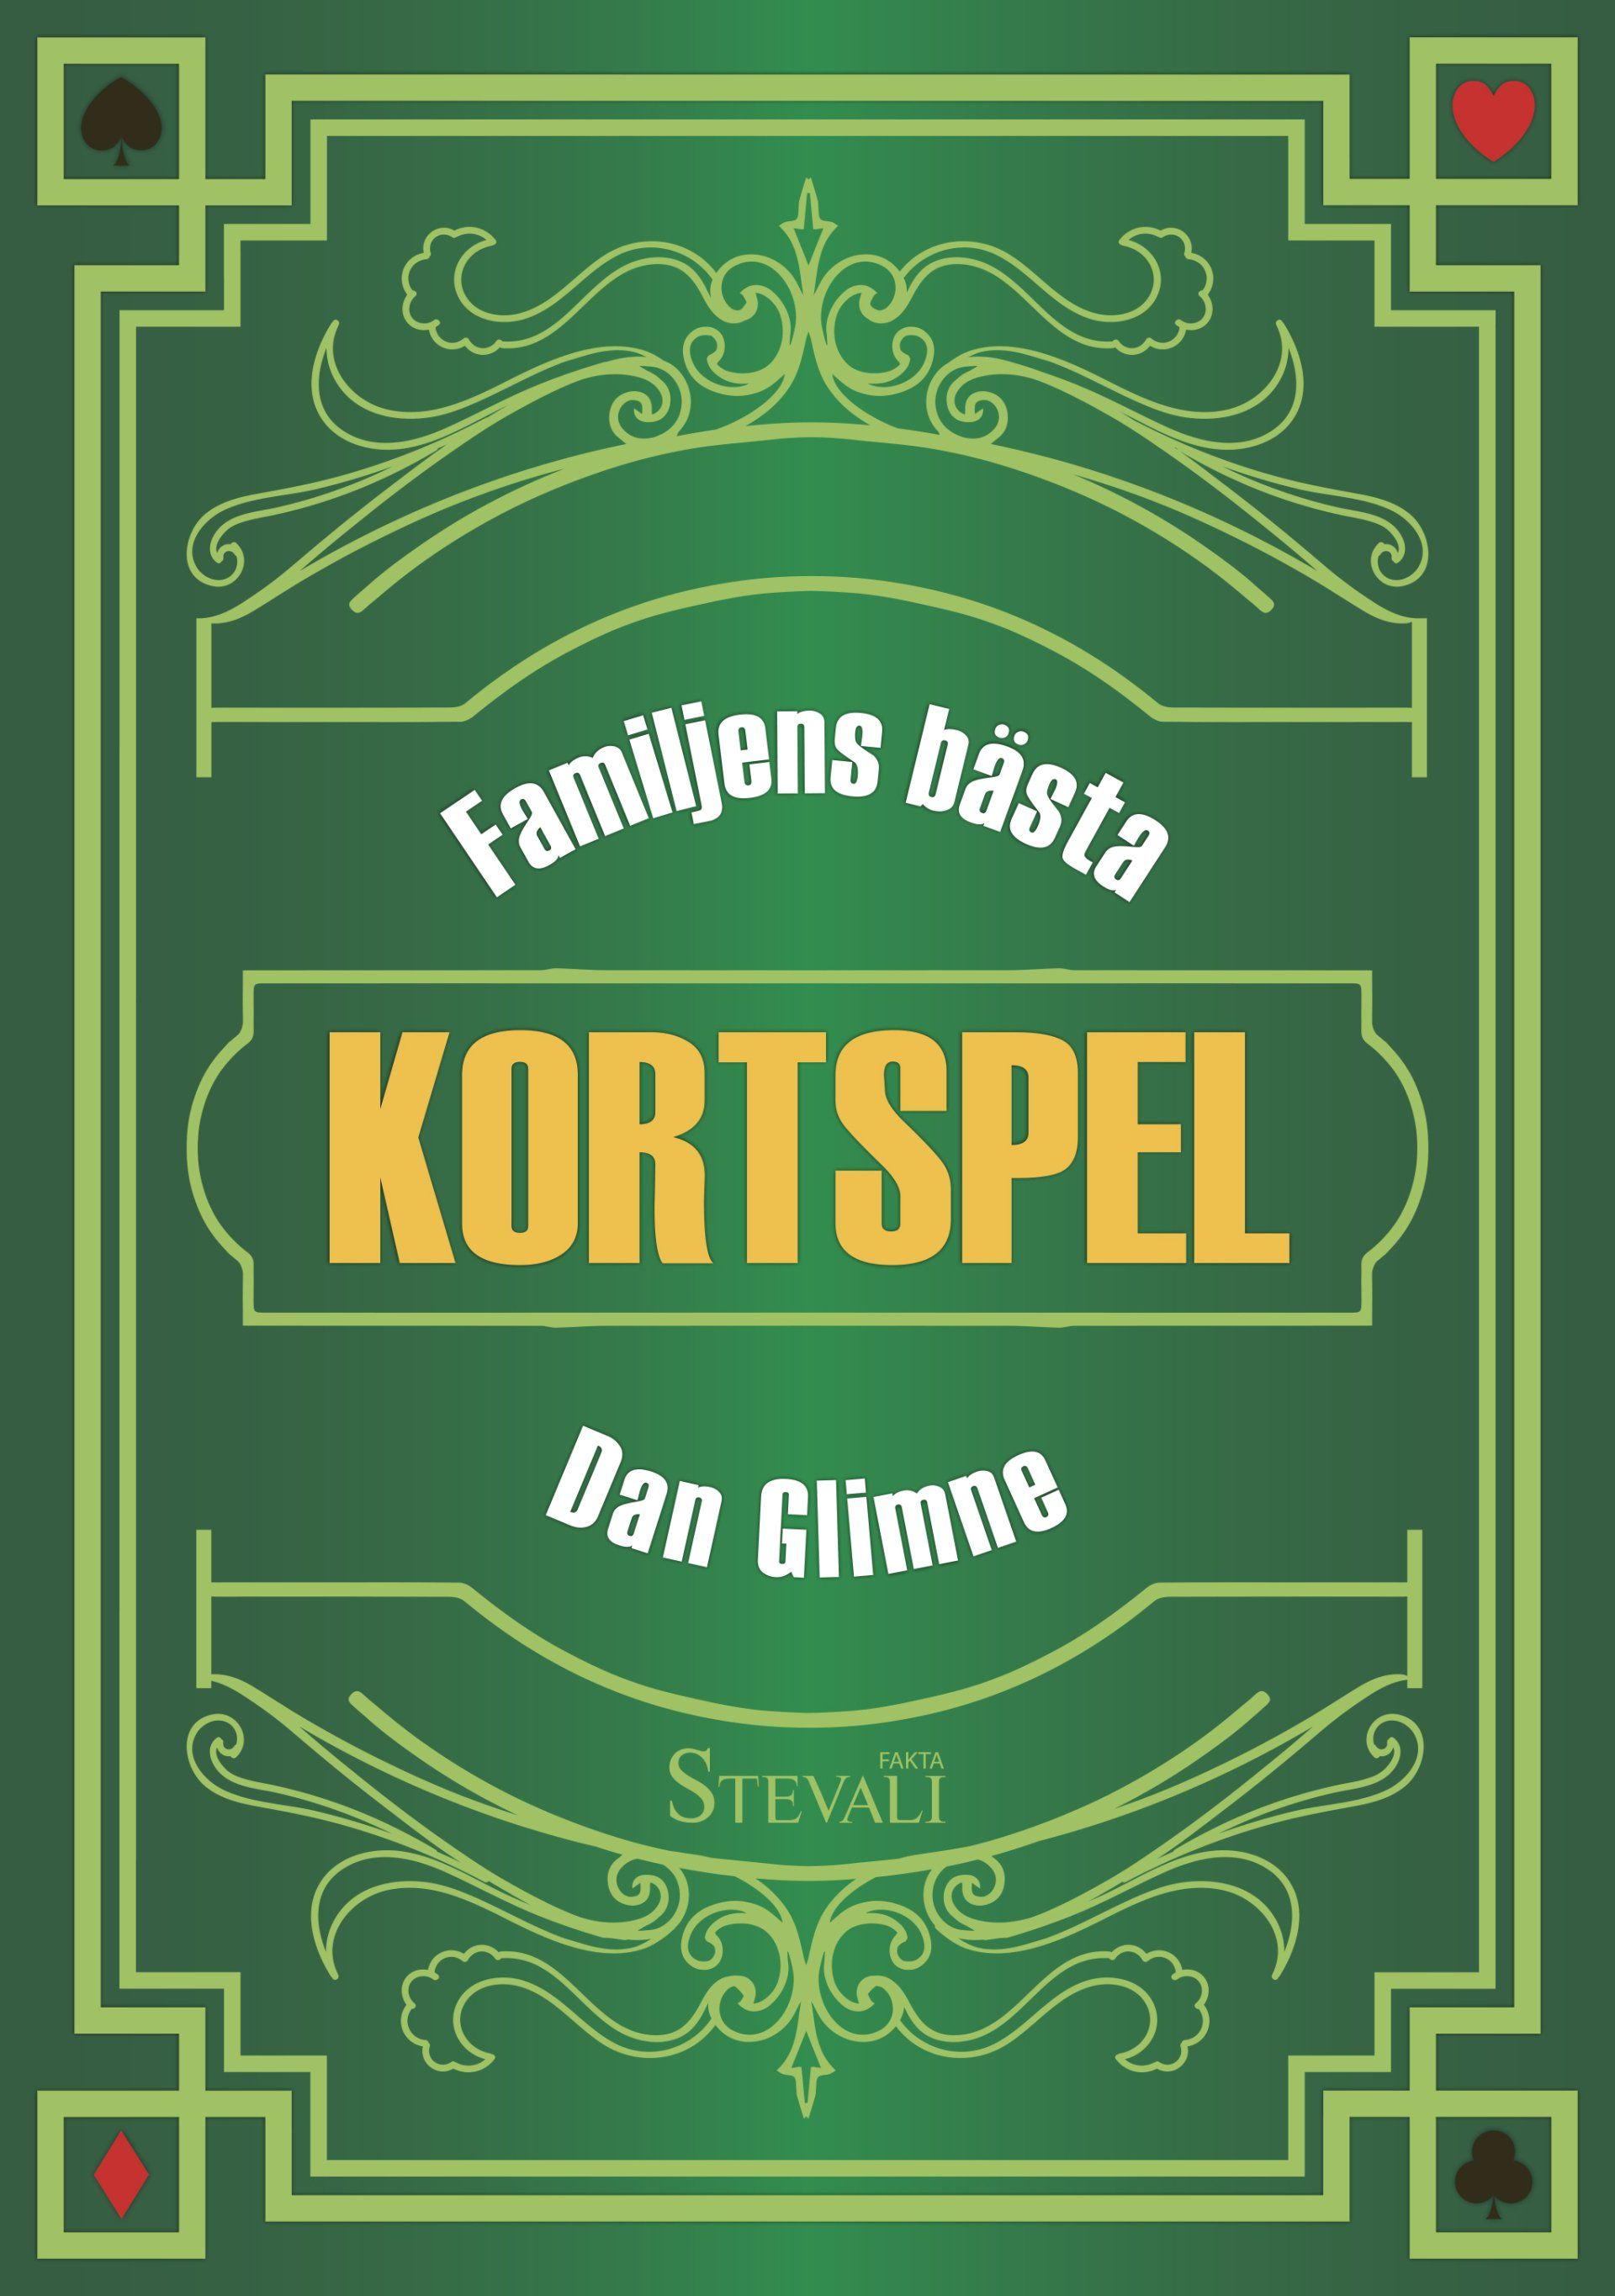 Boken Familjens bästa kortspel är skriven av Dan Glimne på Stevali Bokförlag.